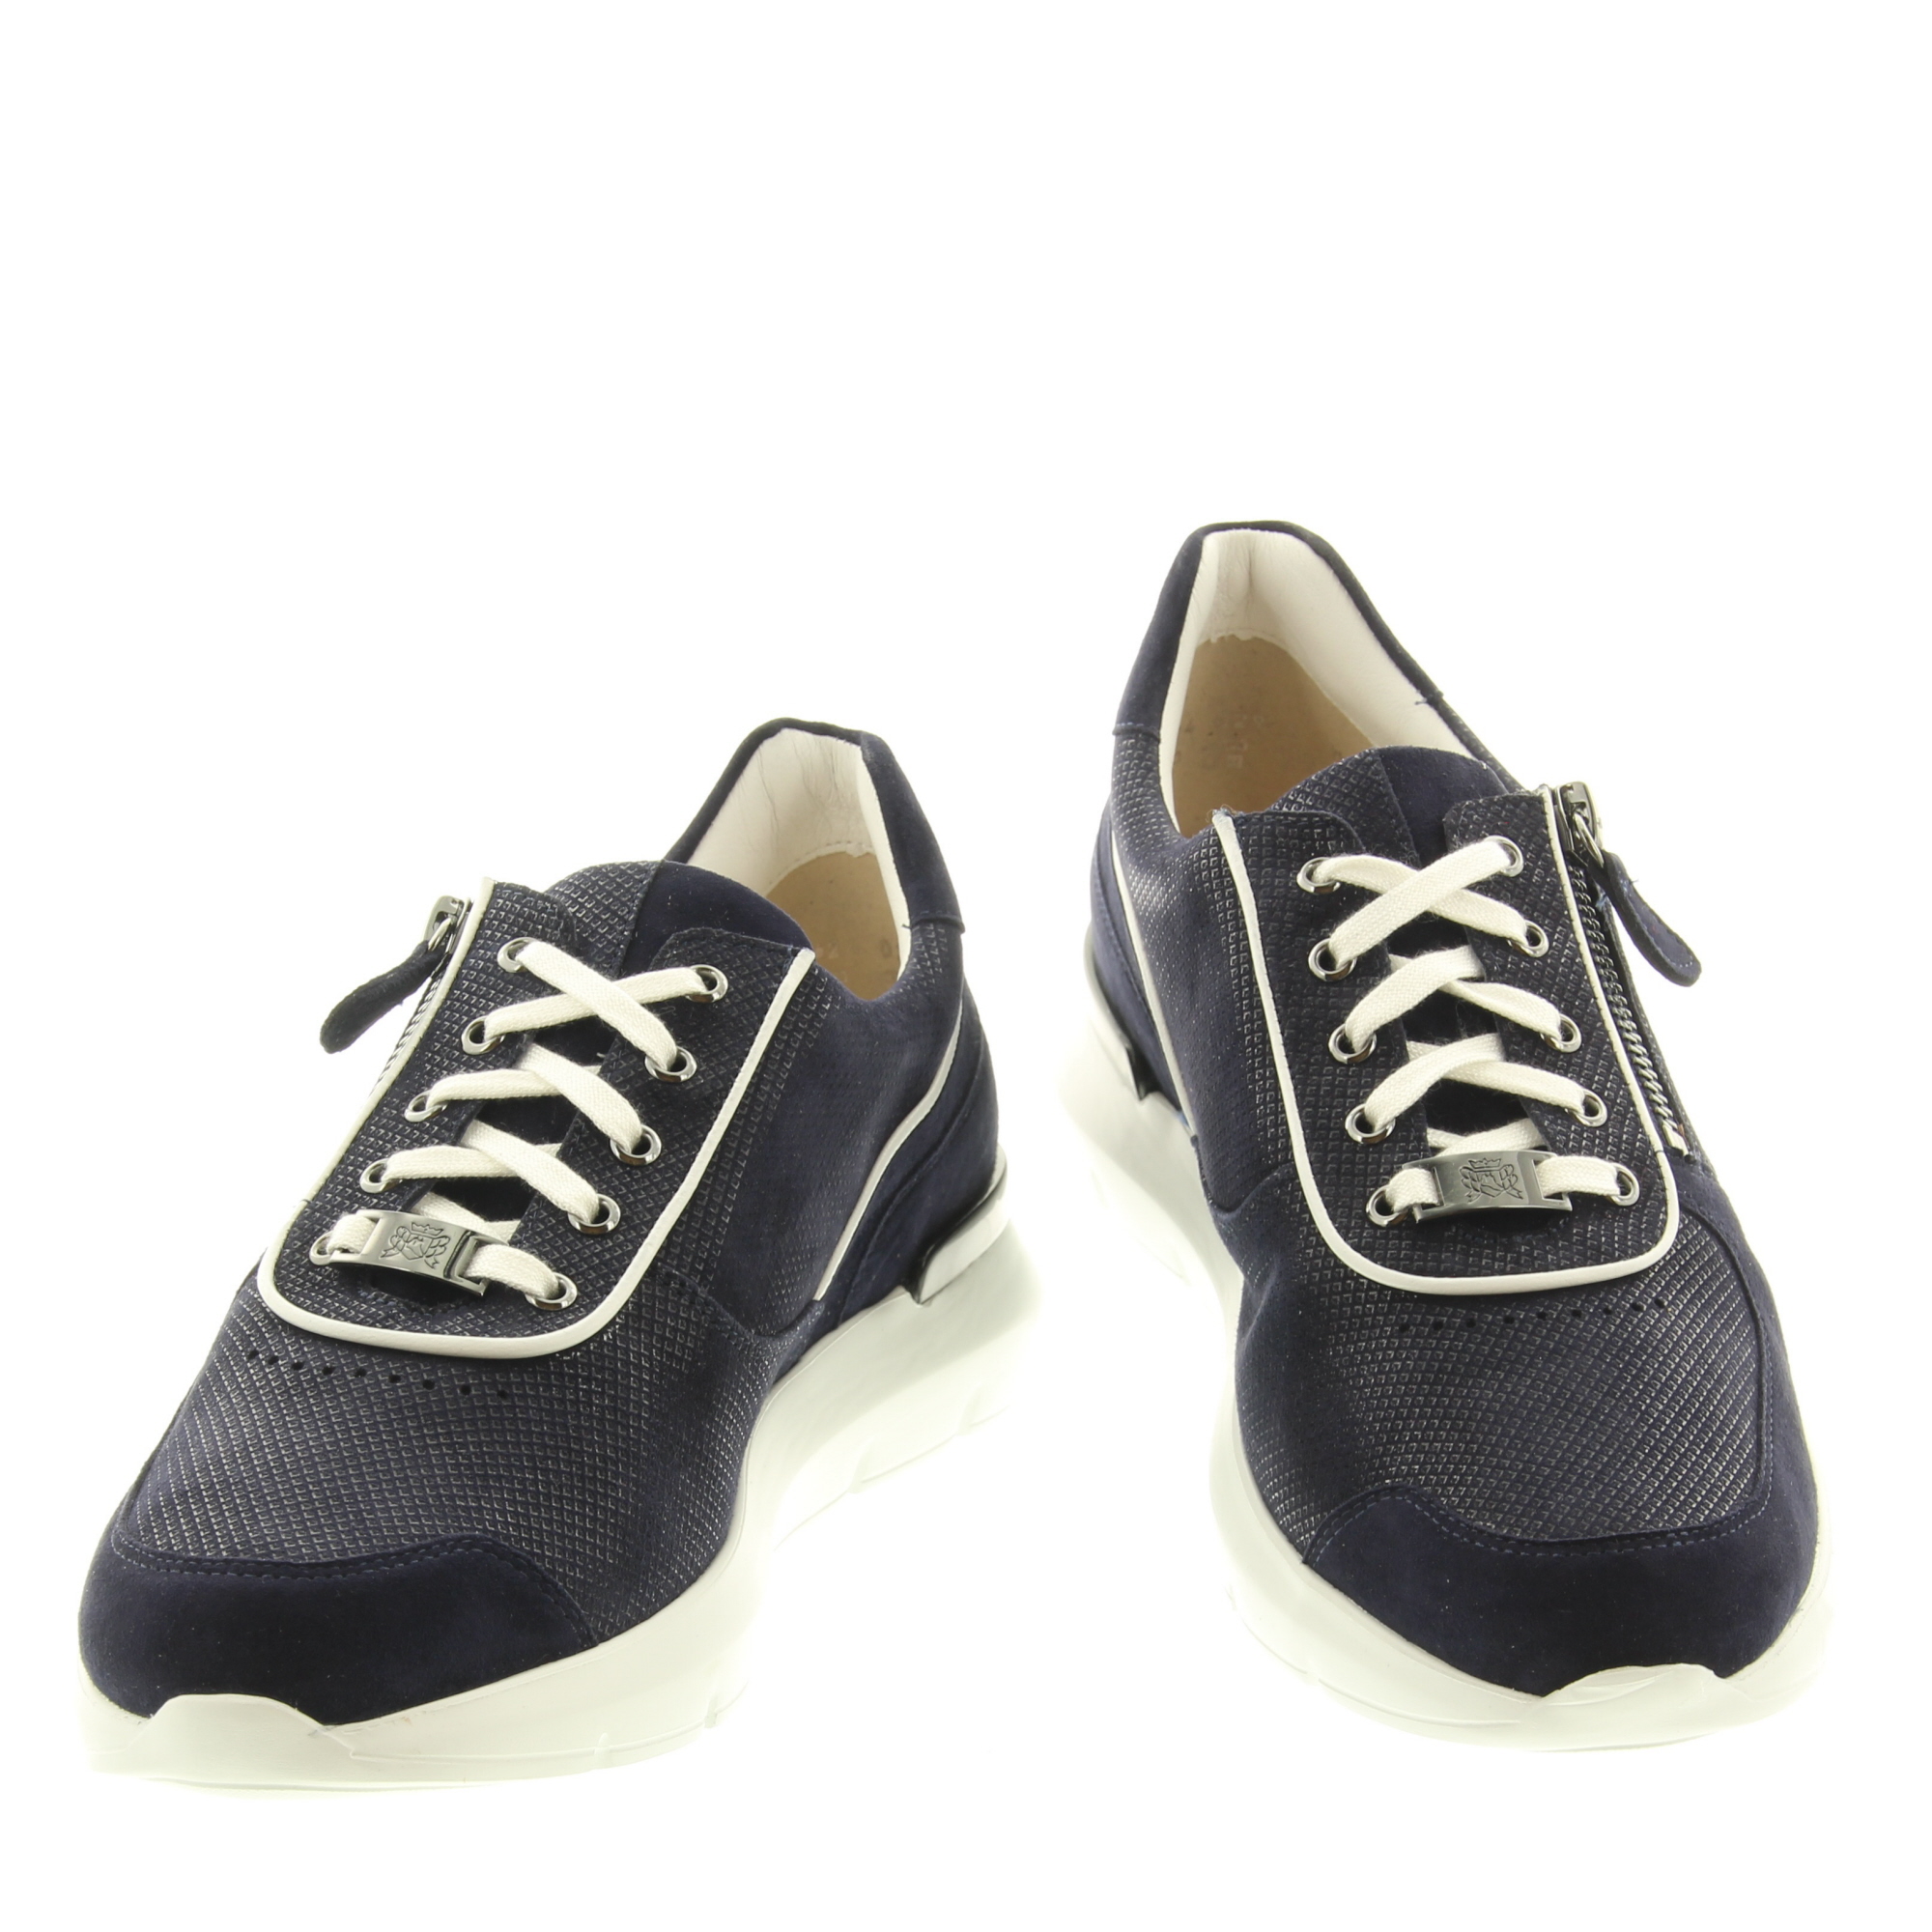 Hassia Shoes 301319 Bordeaux 3202 Blue White